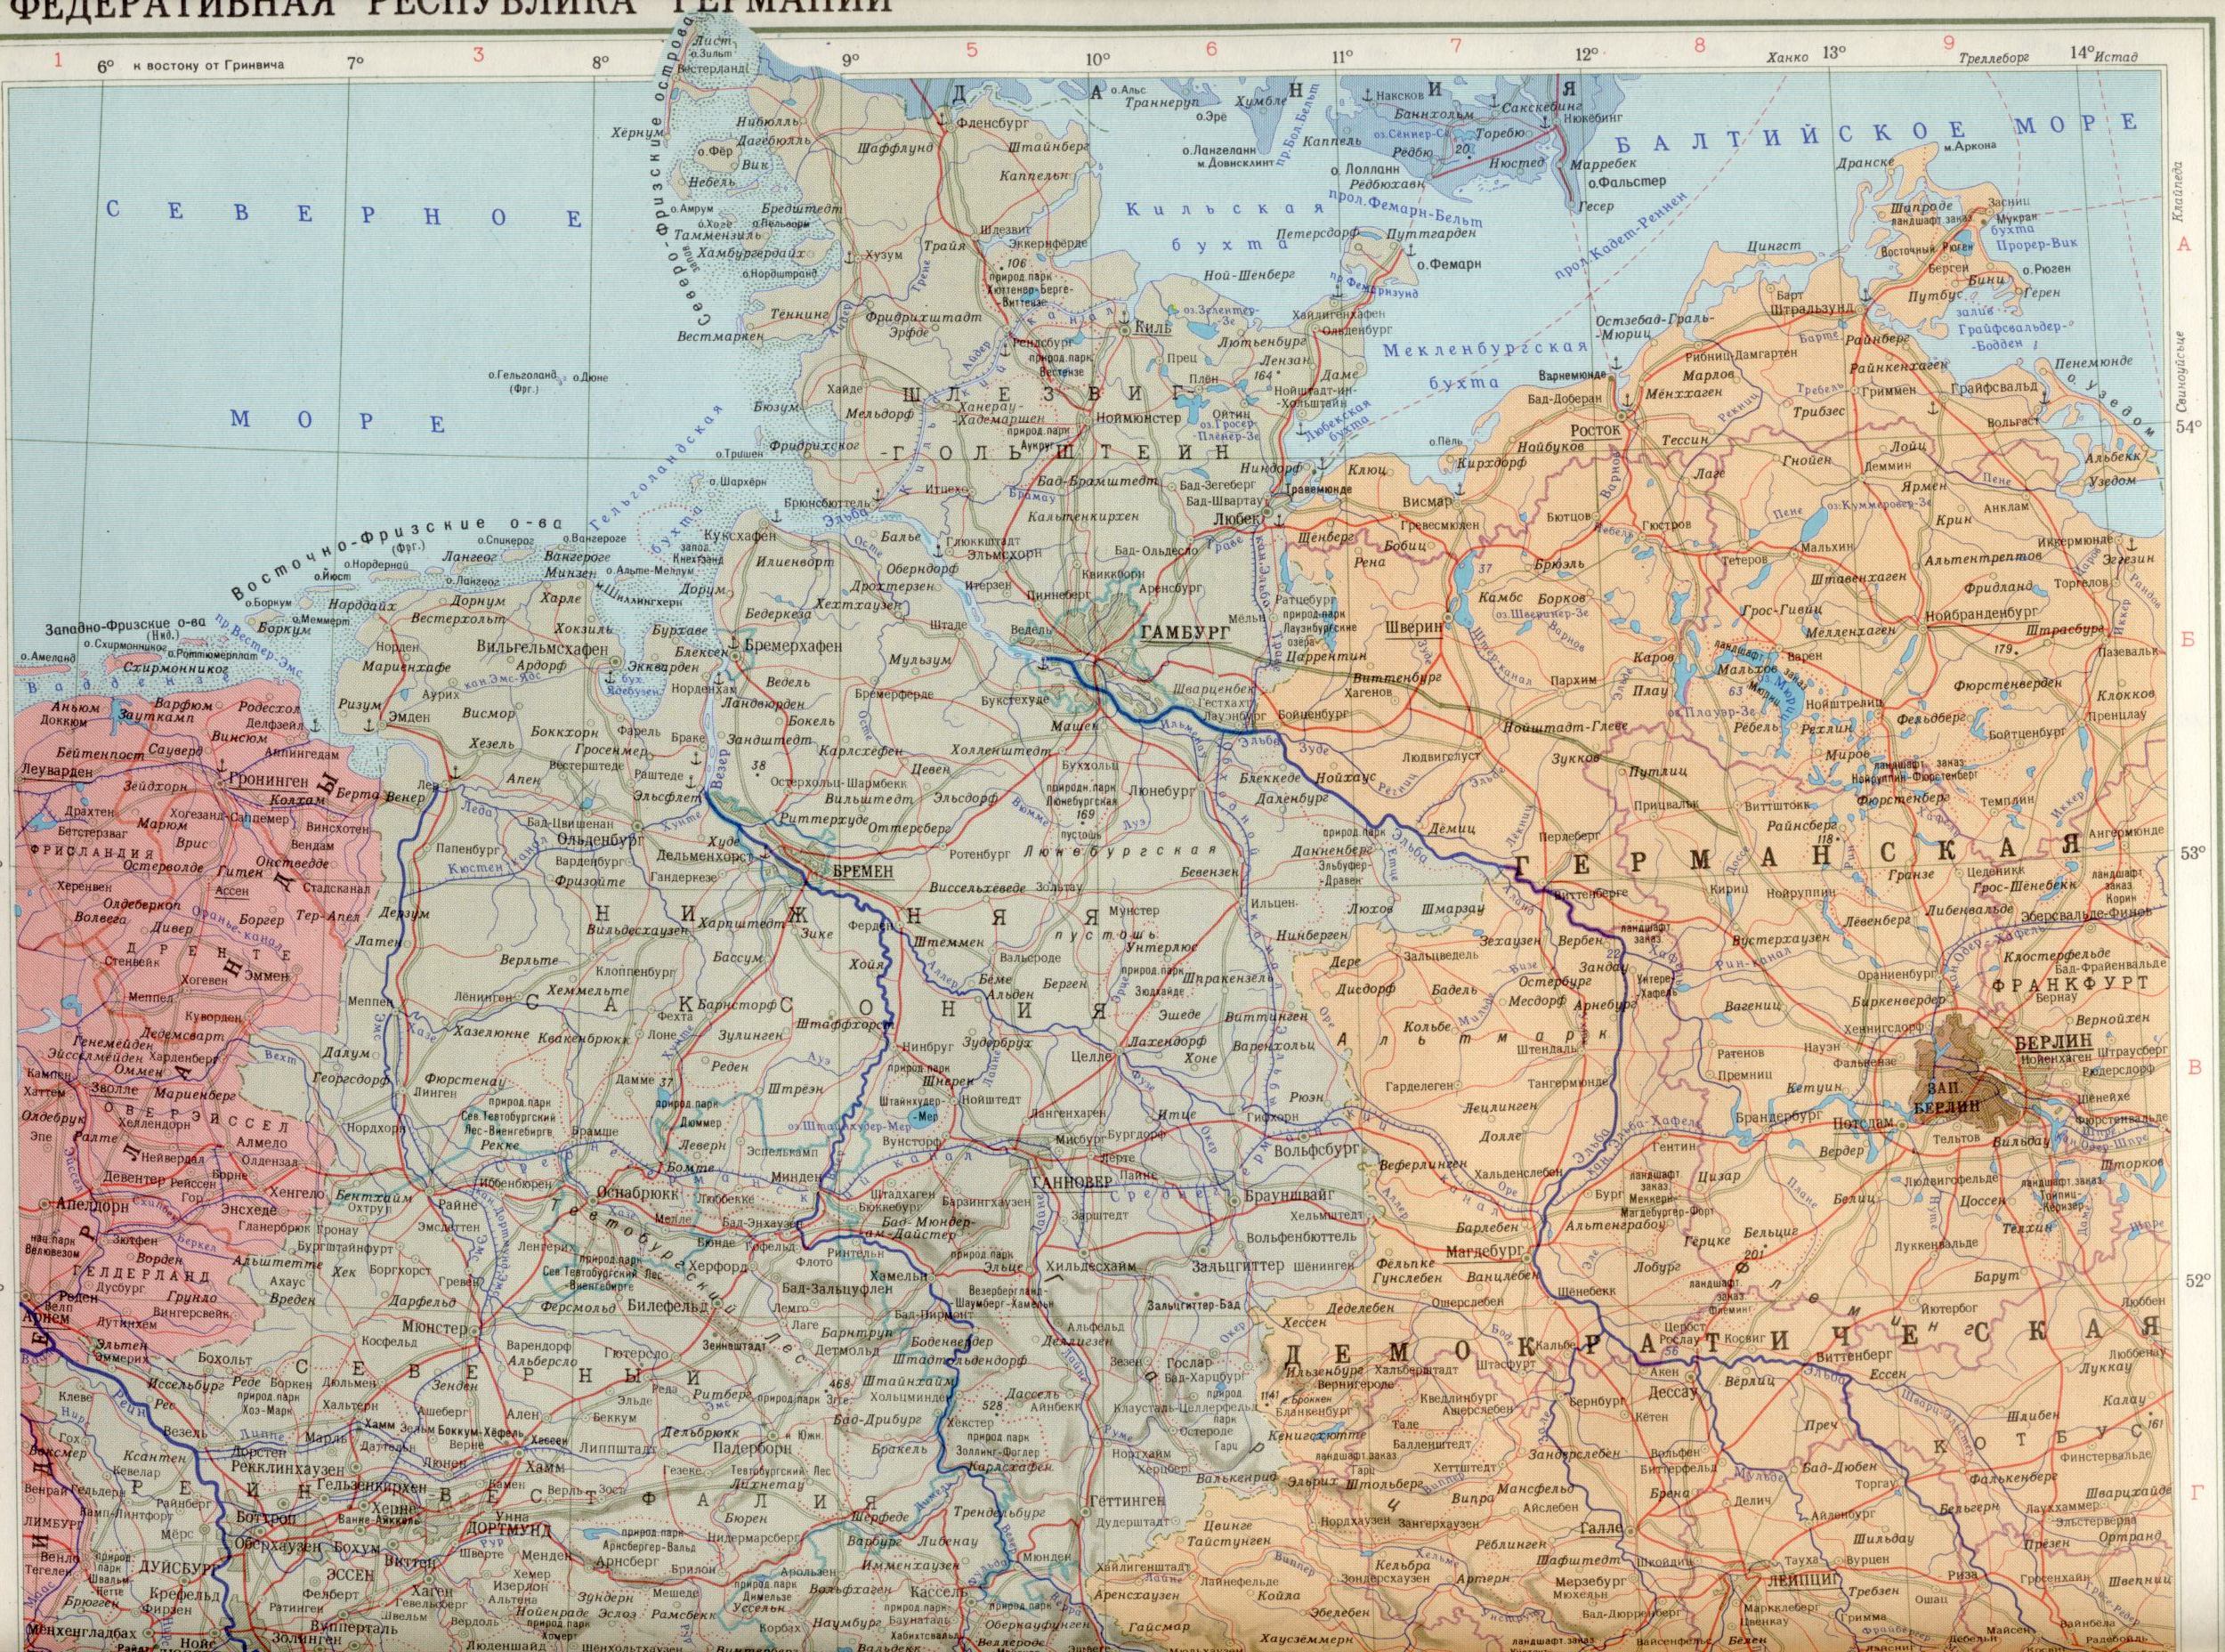 Карта ФРГ 1988 1см=20км Федеративная Республика Германия. Скачать бесплатно карты Европы политические